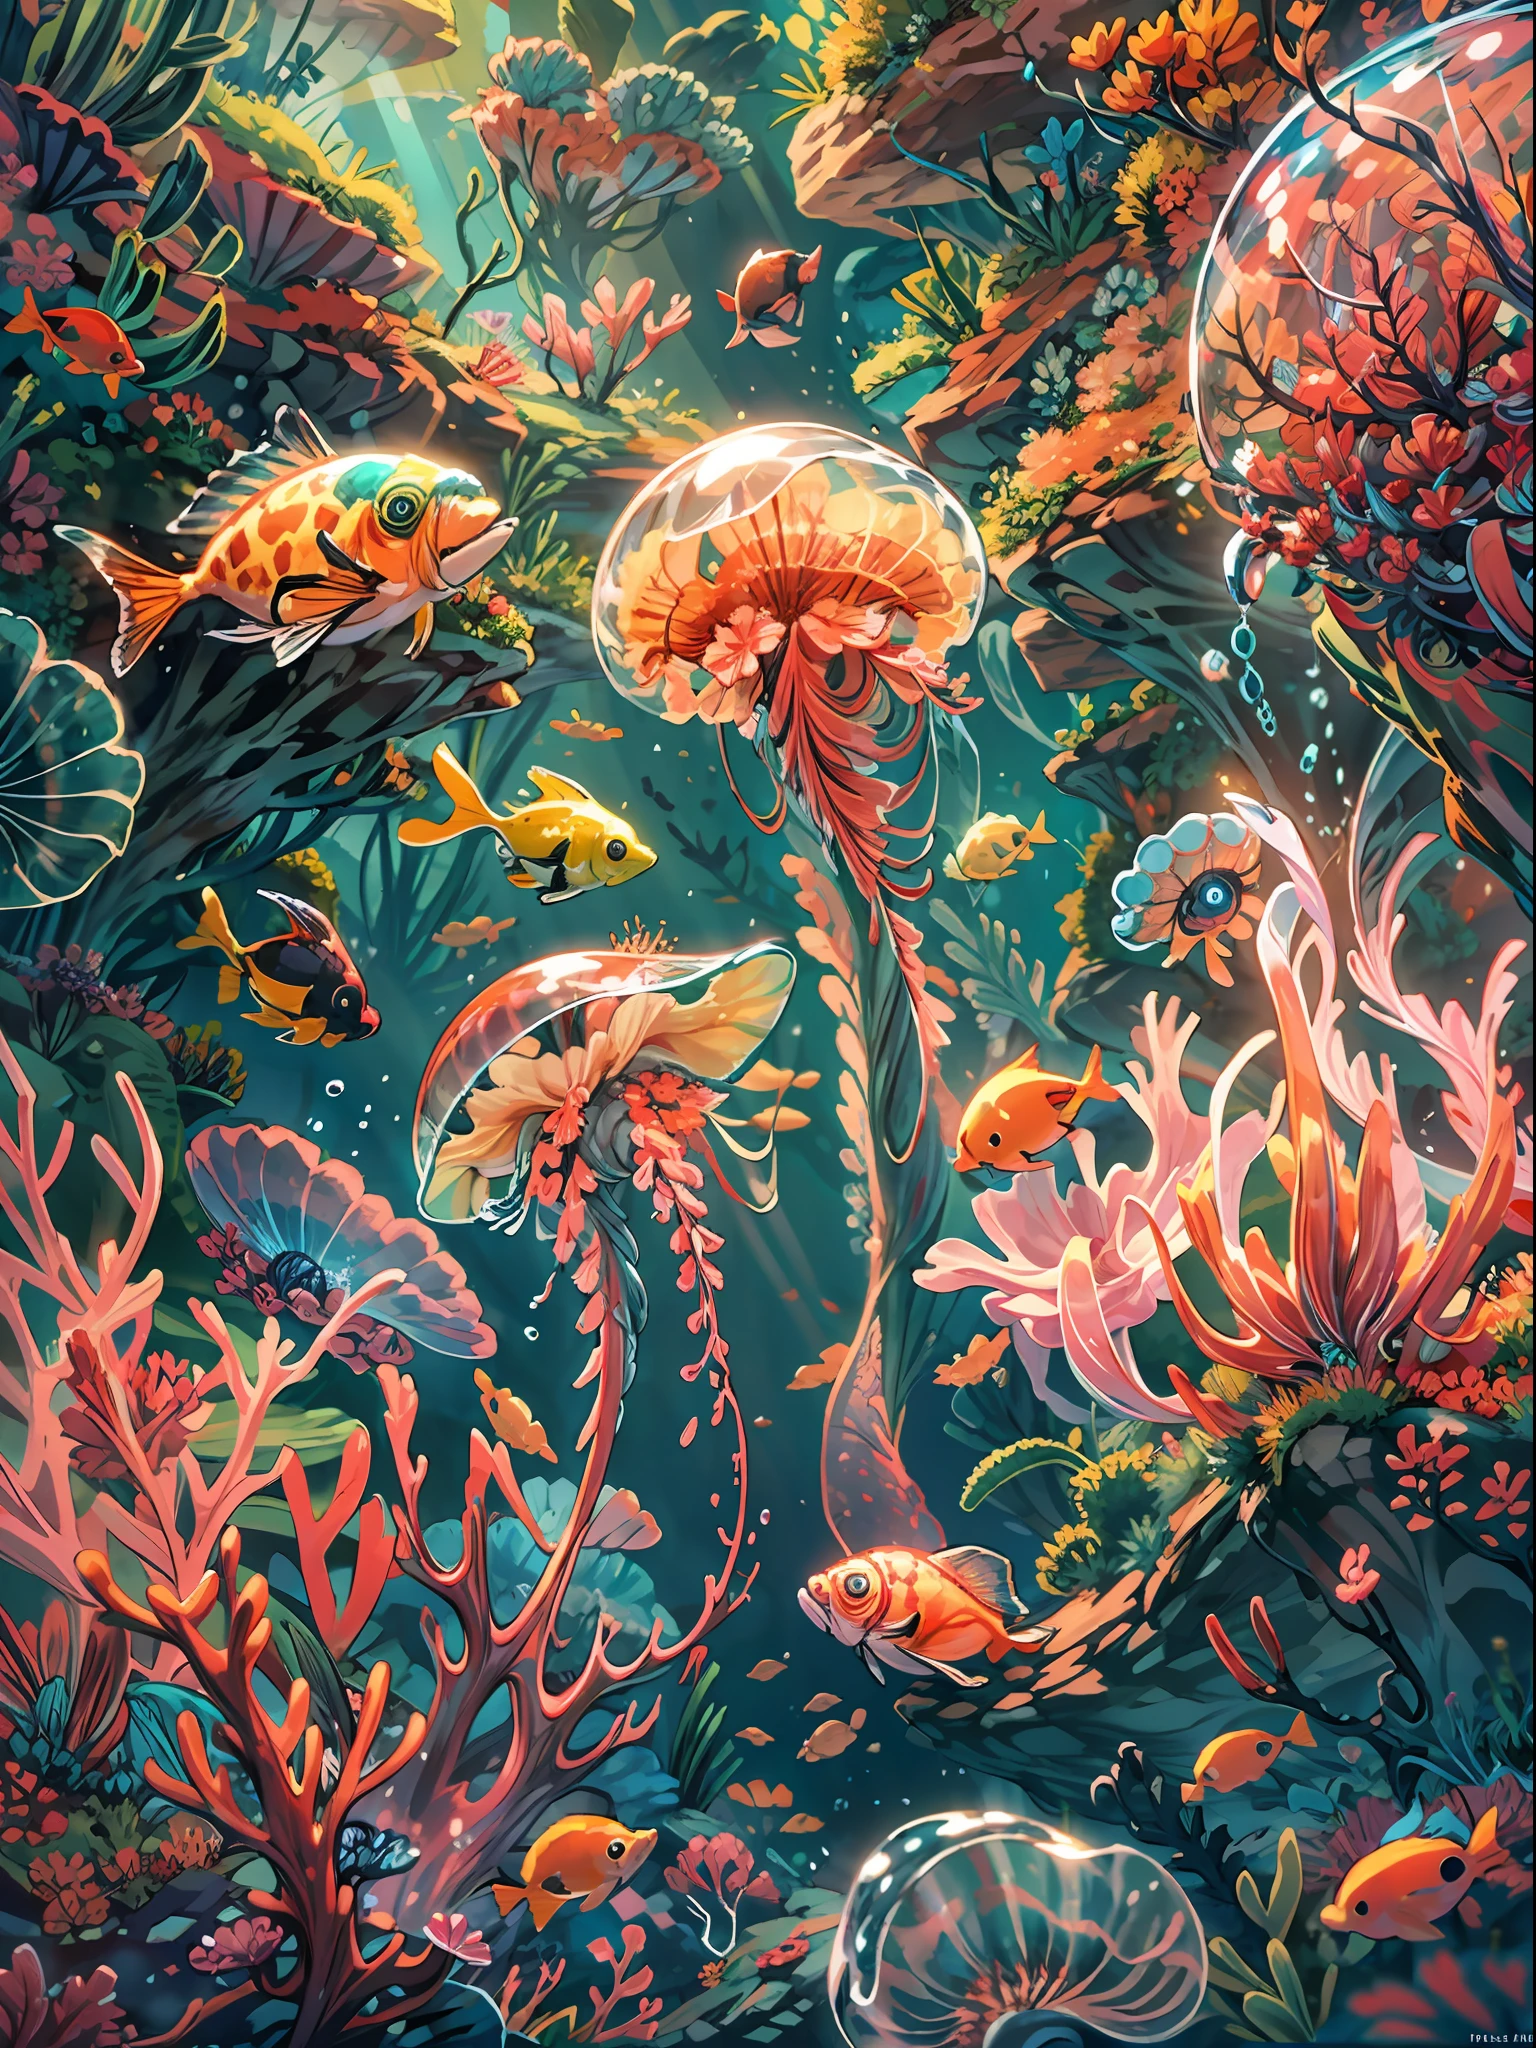 深海背景, 海底场景, 水下灯,海蜇,, 颜色ful small fishes, 颜色ful coral reef, 幻想 sea, 动态角度, 休息,详细的,实际的,4k 高度详细的数字艺术,辛烷值渲染, 生物发光, 休息 8K resolution concept art, 现实主义,由 Mappa studios 制作,杰作,最好的质量,官方艺术,插图,清晰的线条,(凉爽的_颜色),完美构图,荒诞, 幻想,专注,三分法则